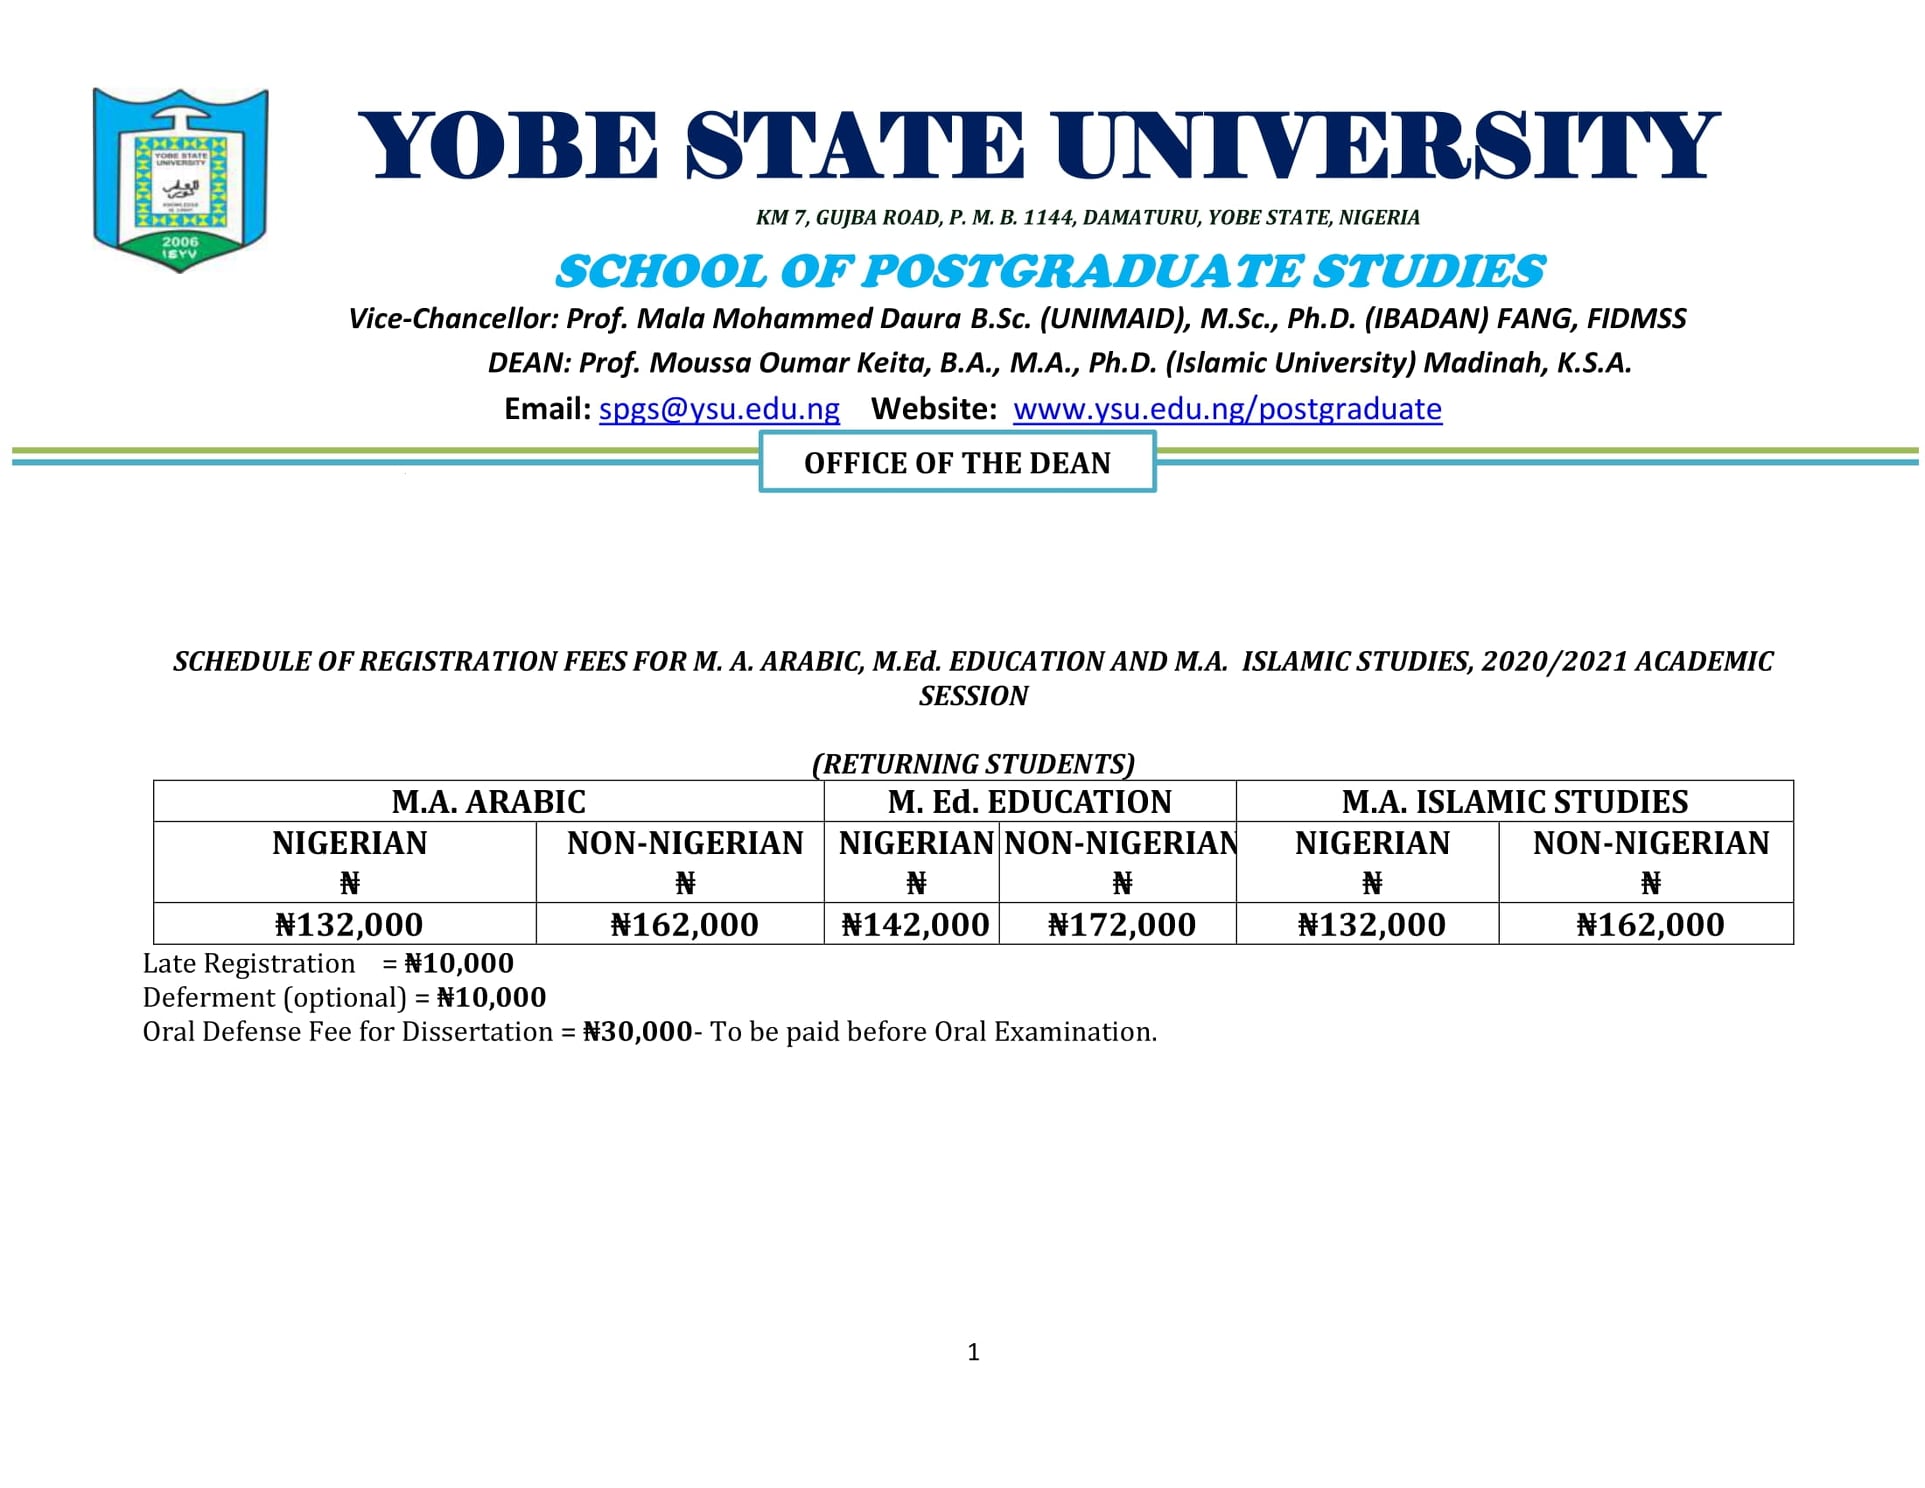 YSU Postgraduate School Fees Schedule 2020/2021